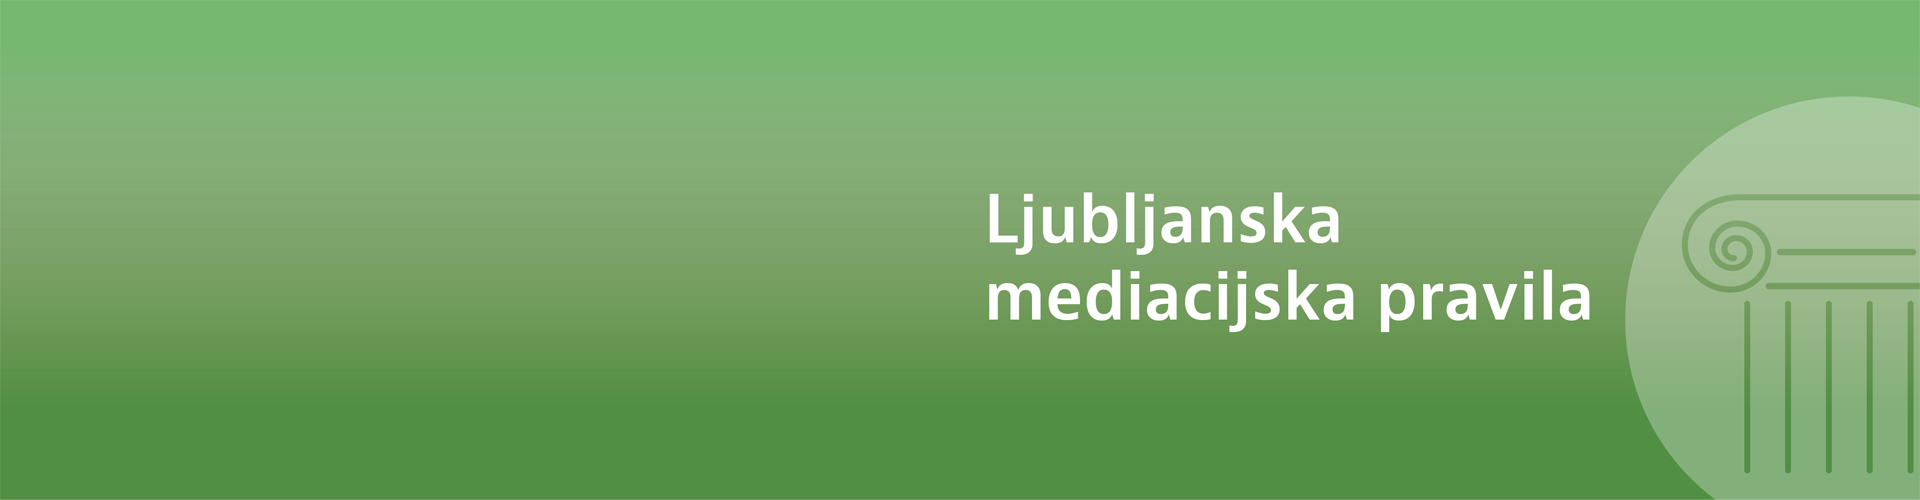 Ne spreglejte: Ljubljanska mediacijska pravila